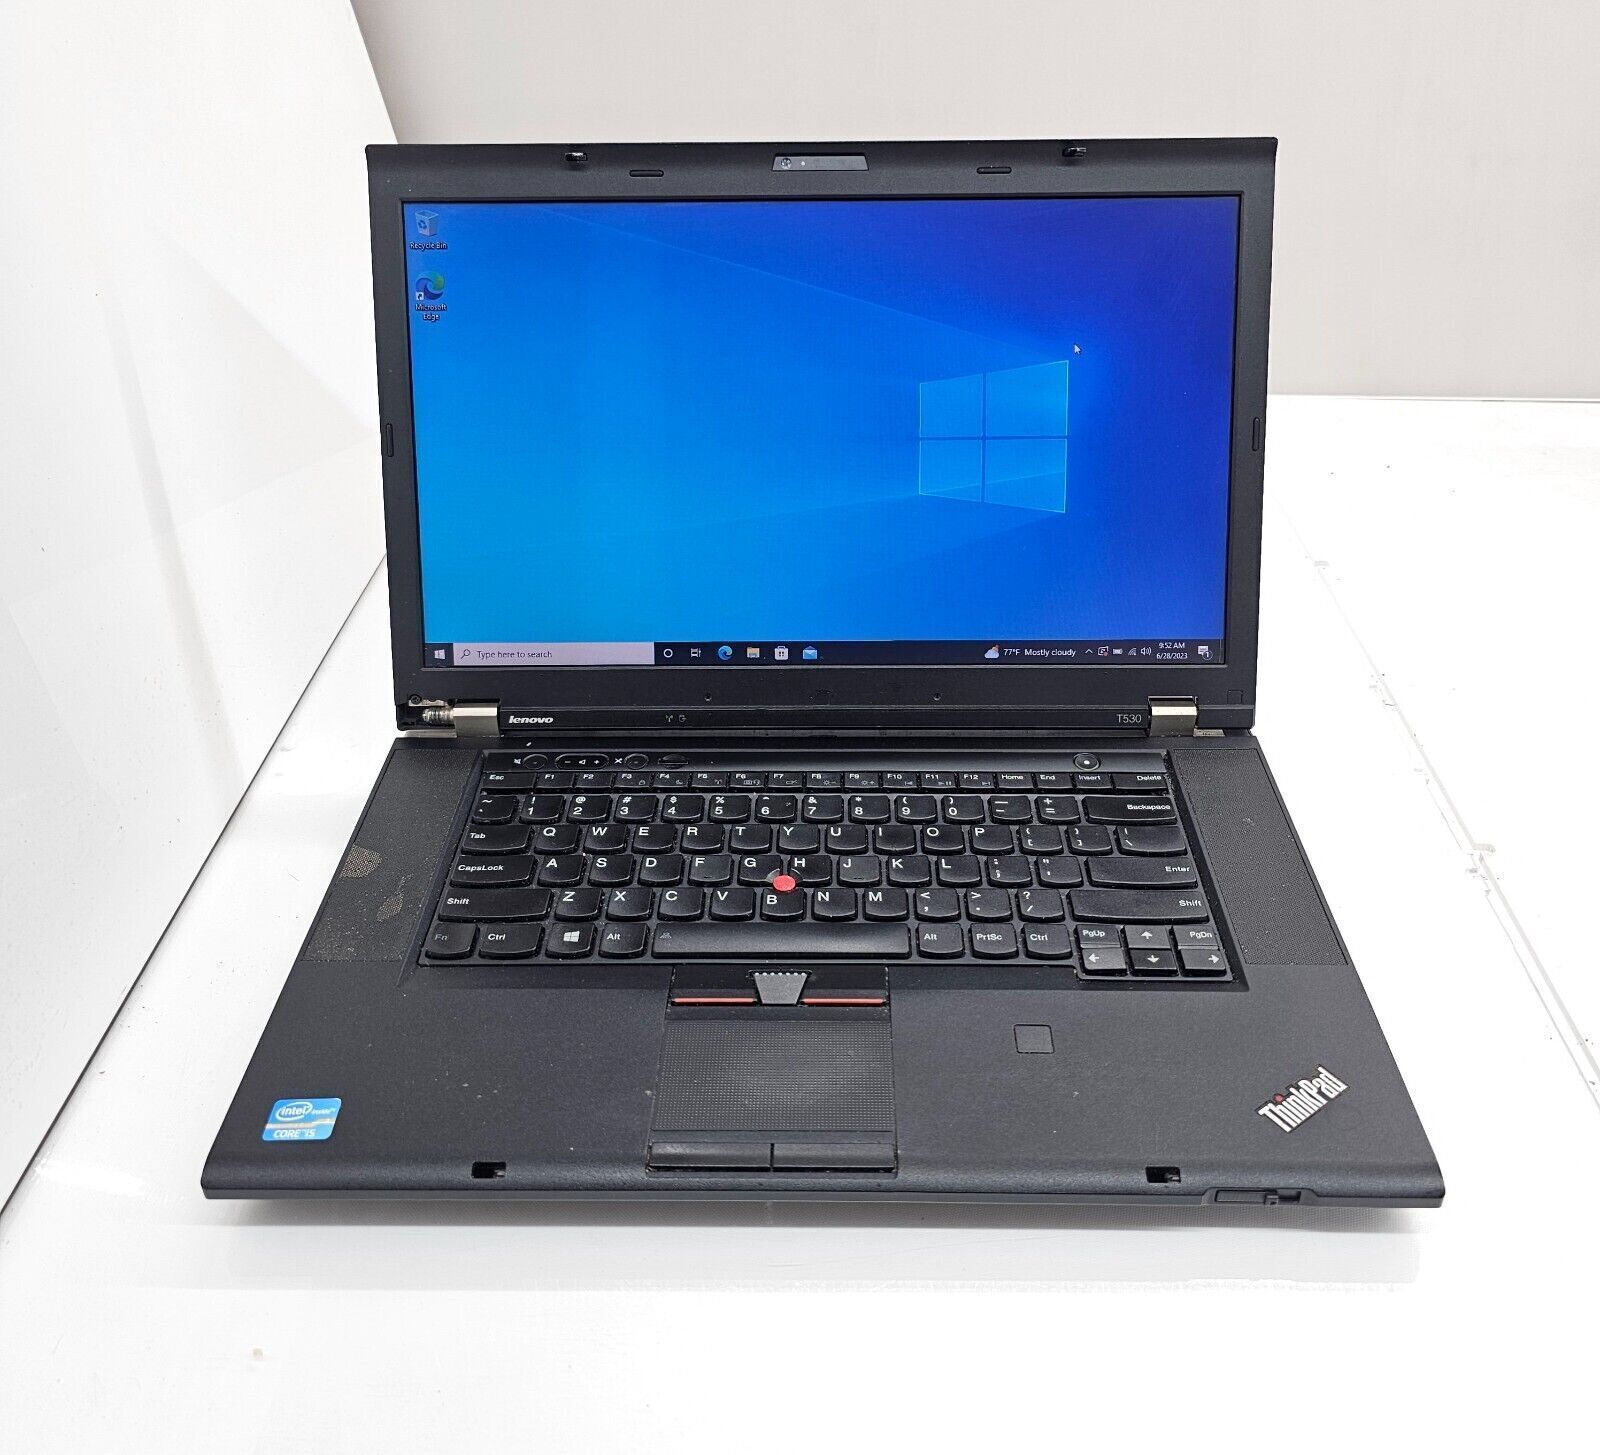 LENOVO ThinkPad T530 i5-3230M @2.60GHz 8GB Ram 500GB HDD No OS